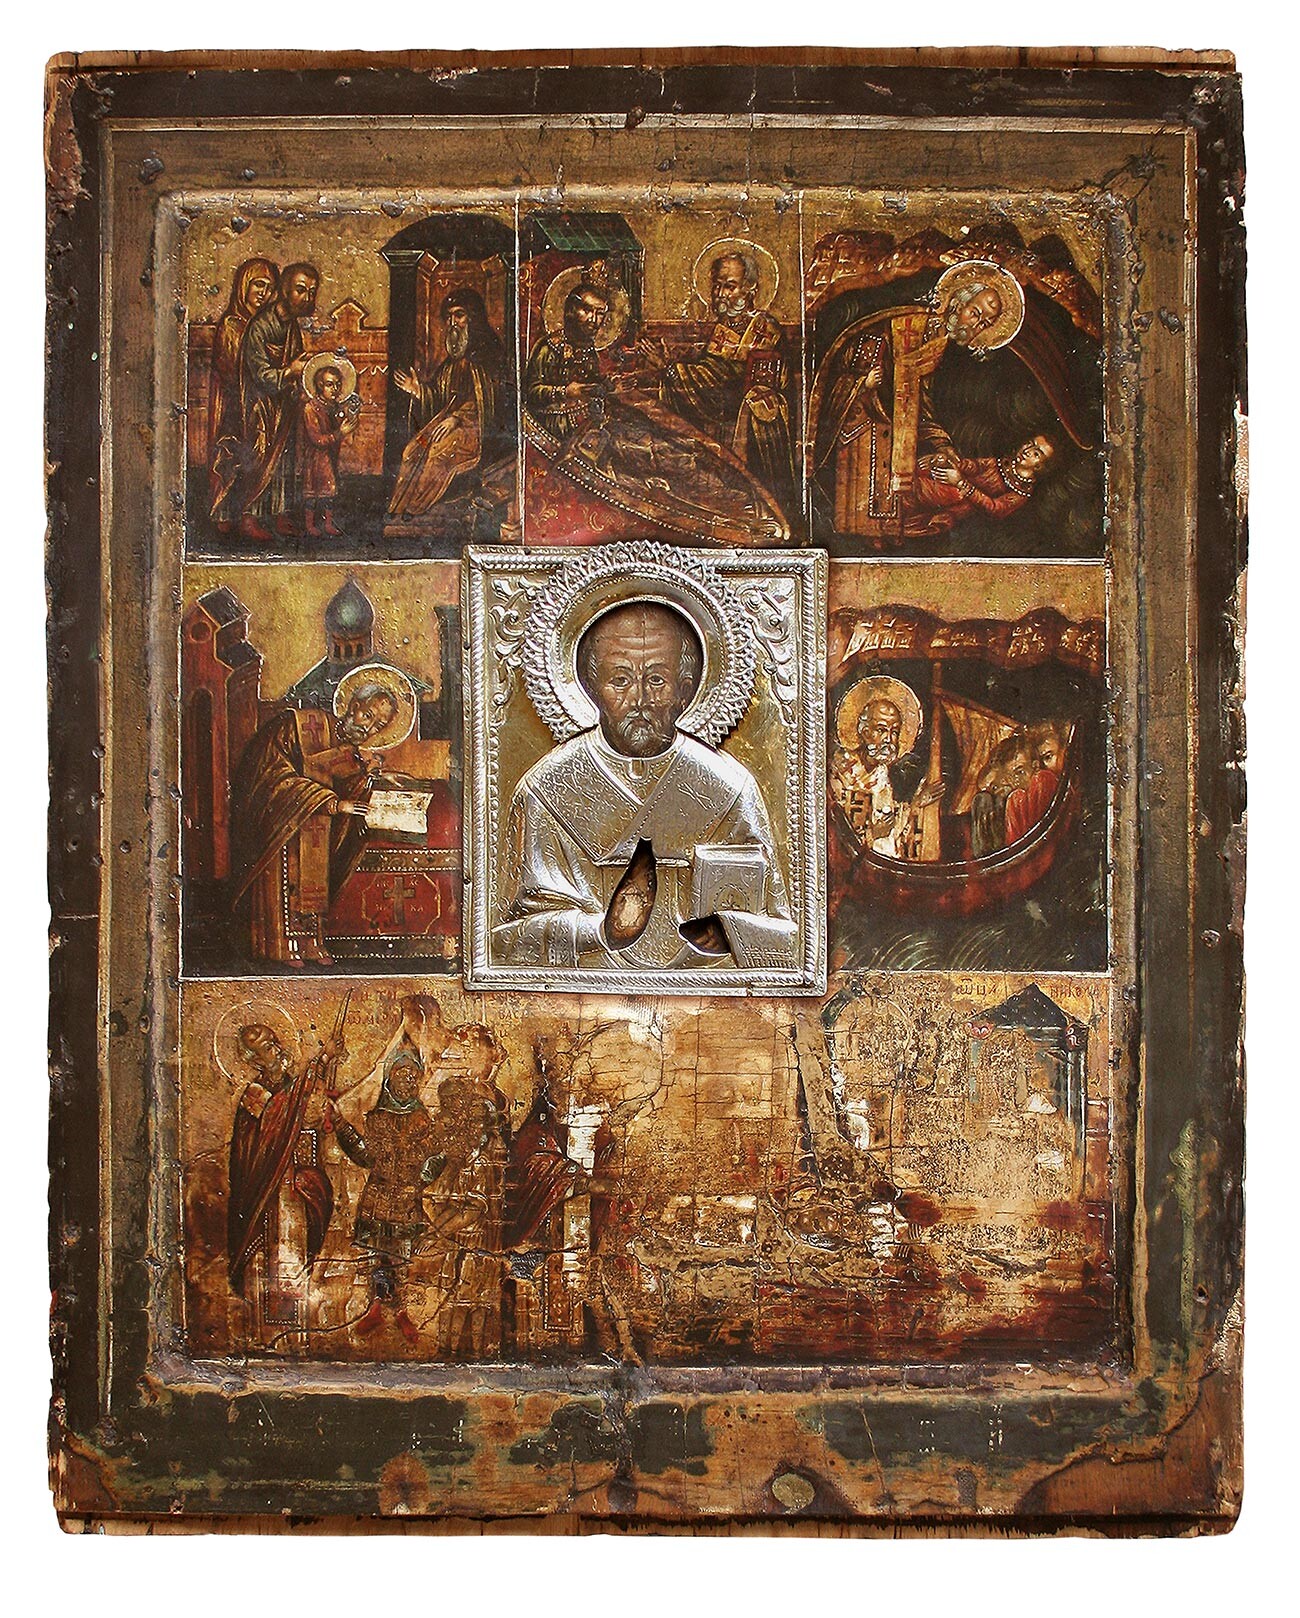 Великорецкая икона Николая Чудотворца XVI век (Свято-Серафимовский собор в Кирове)